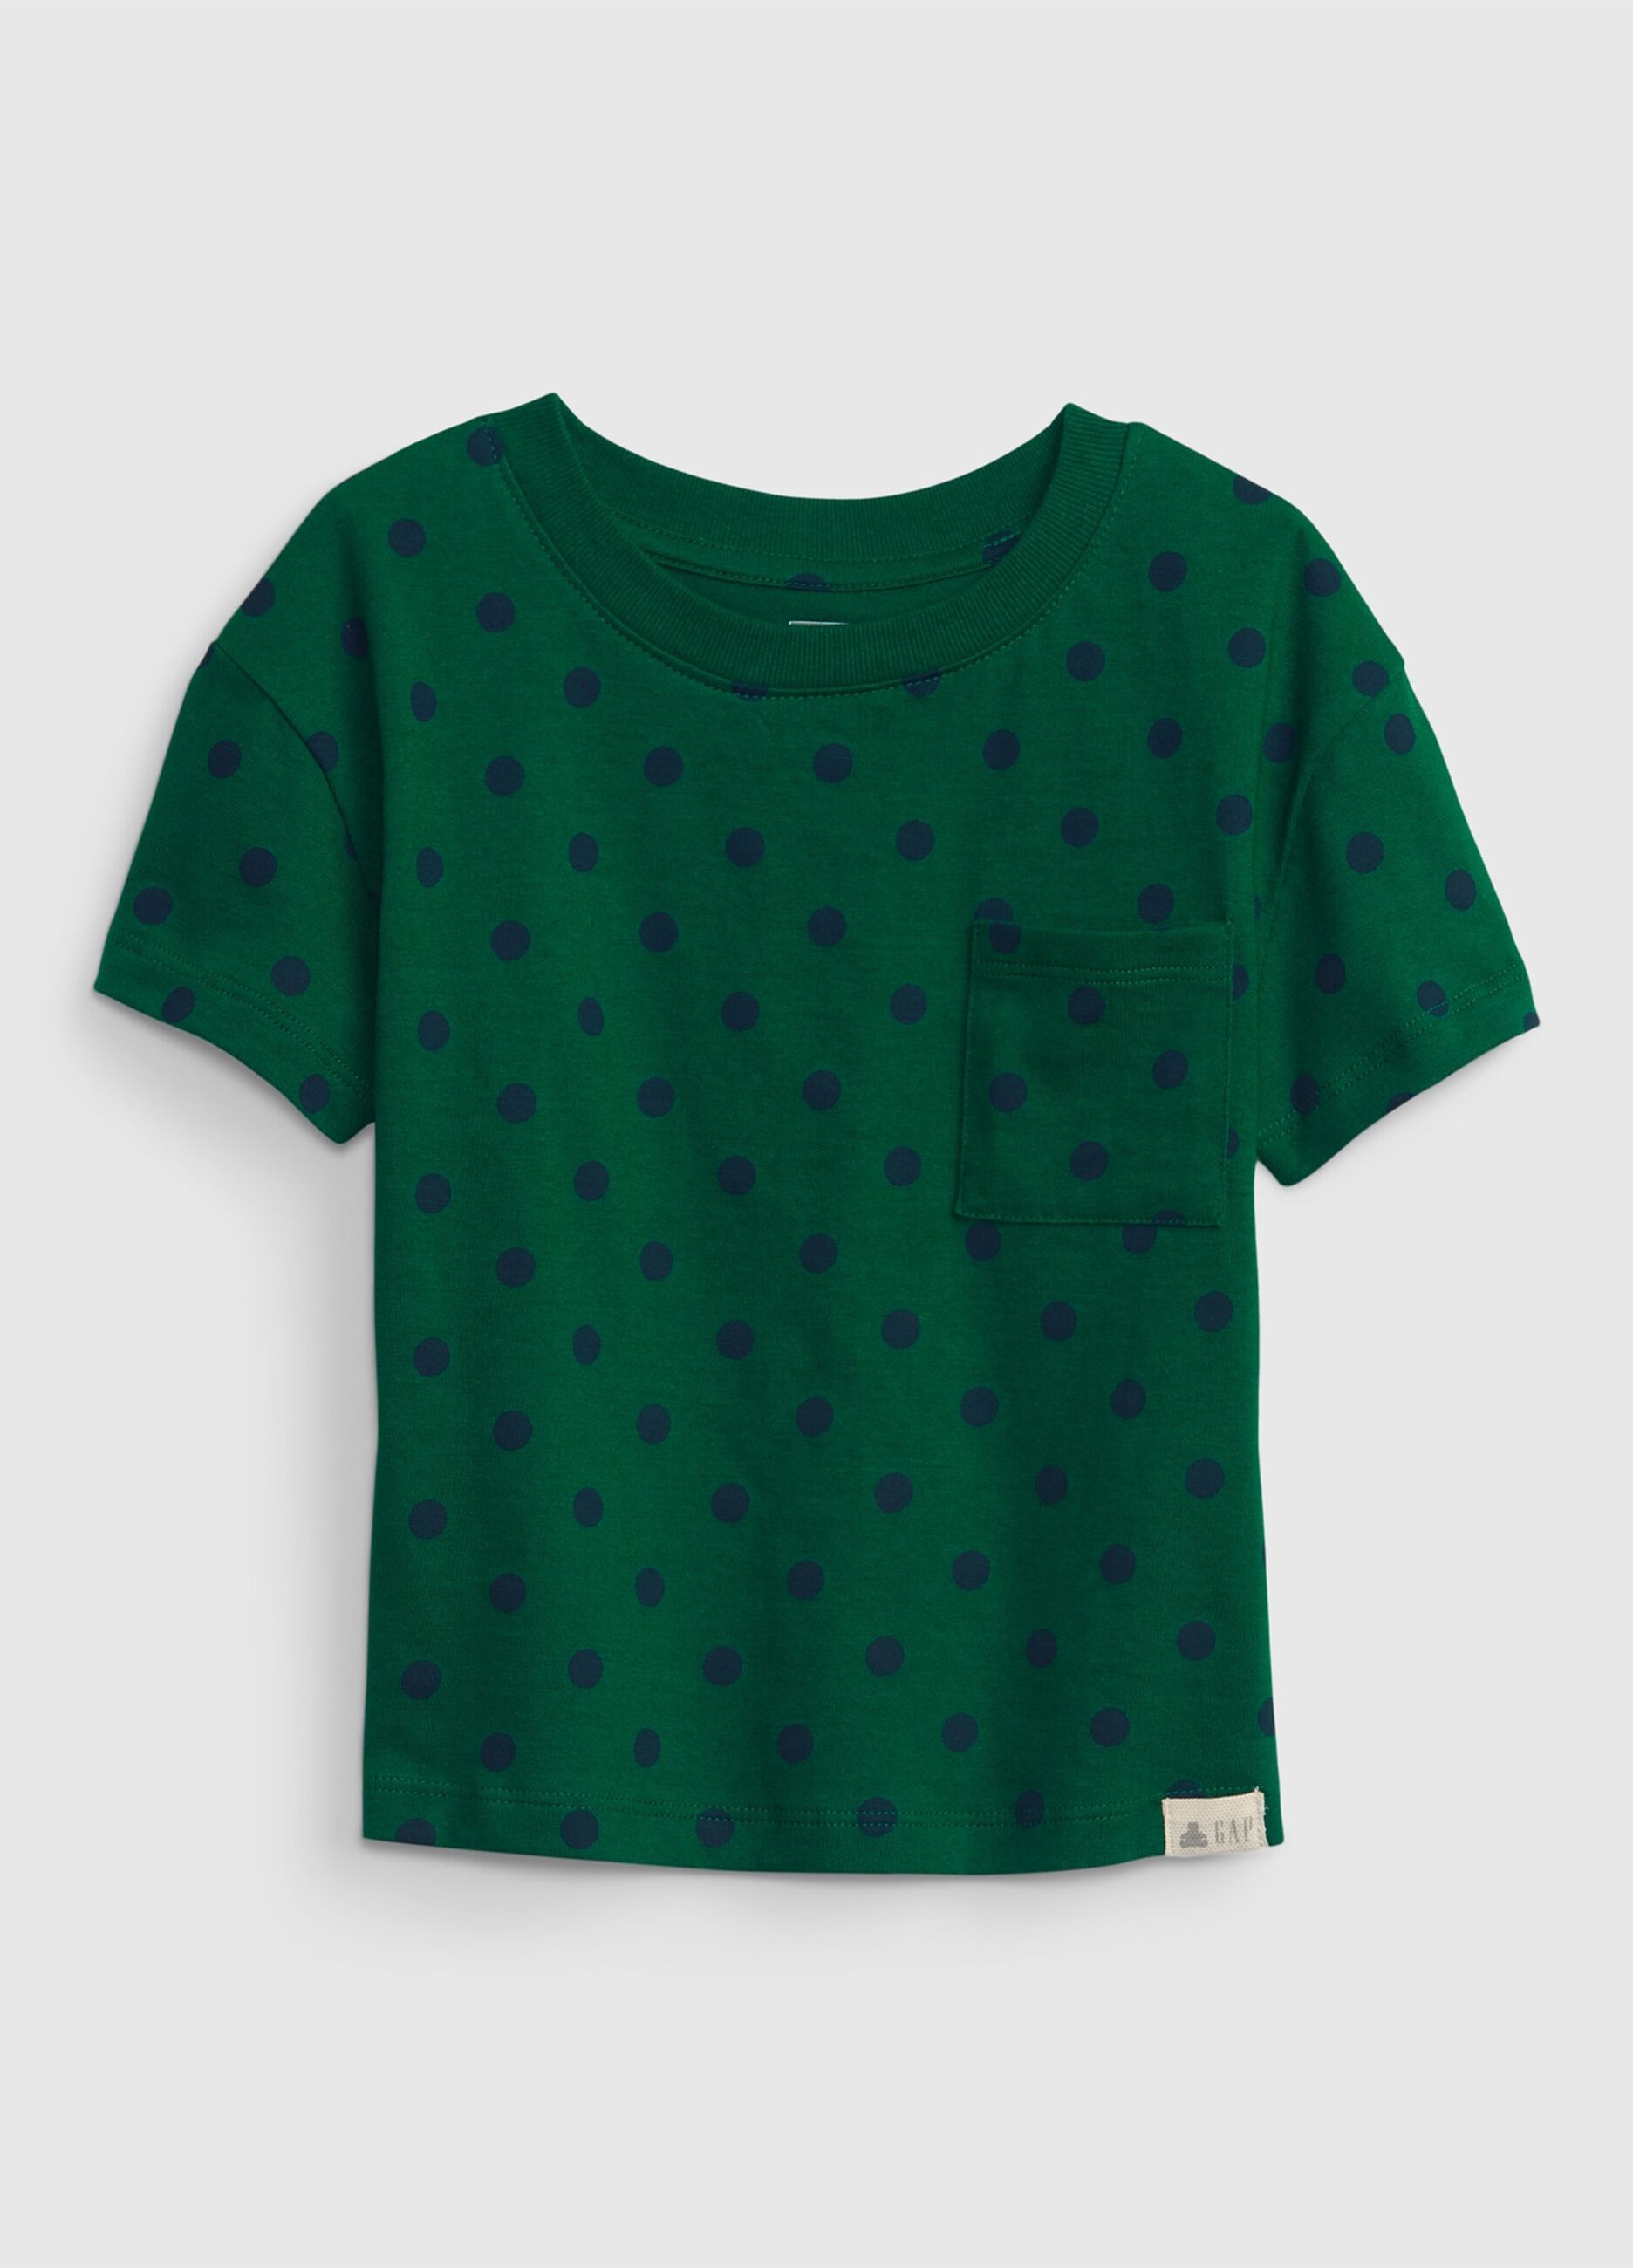 Polka dot T-shirt with pocket